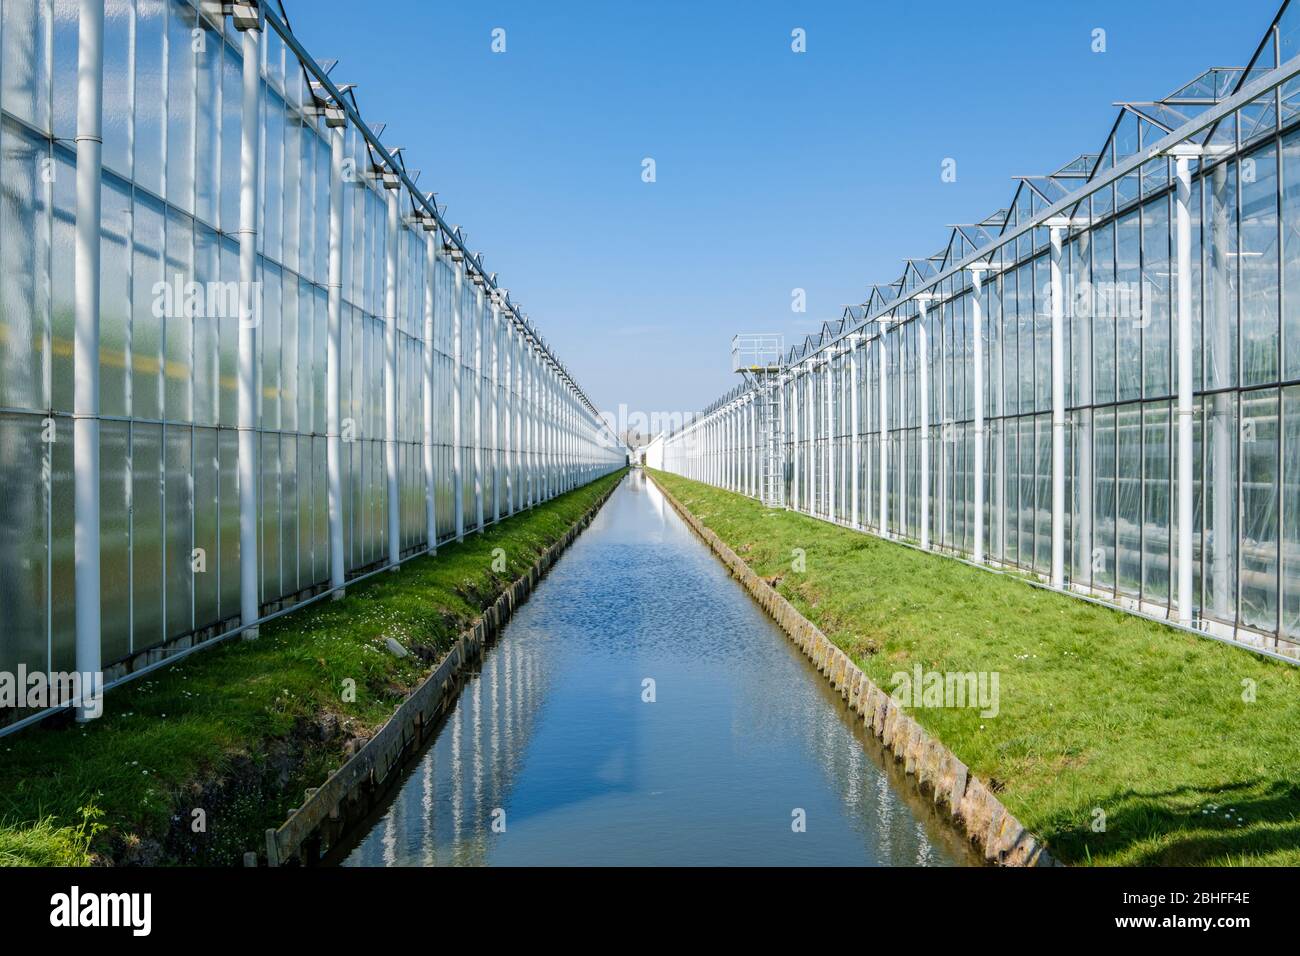 Perspectiva de un invernadero industrial moderno para tomates en los países Bajos Foto de stock